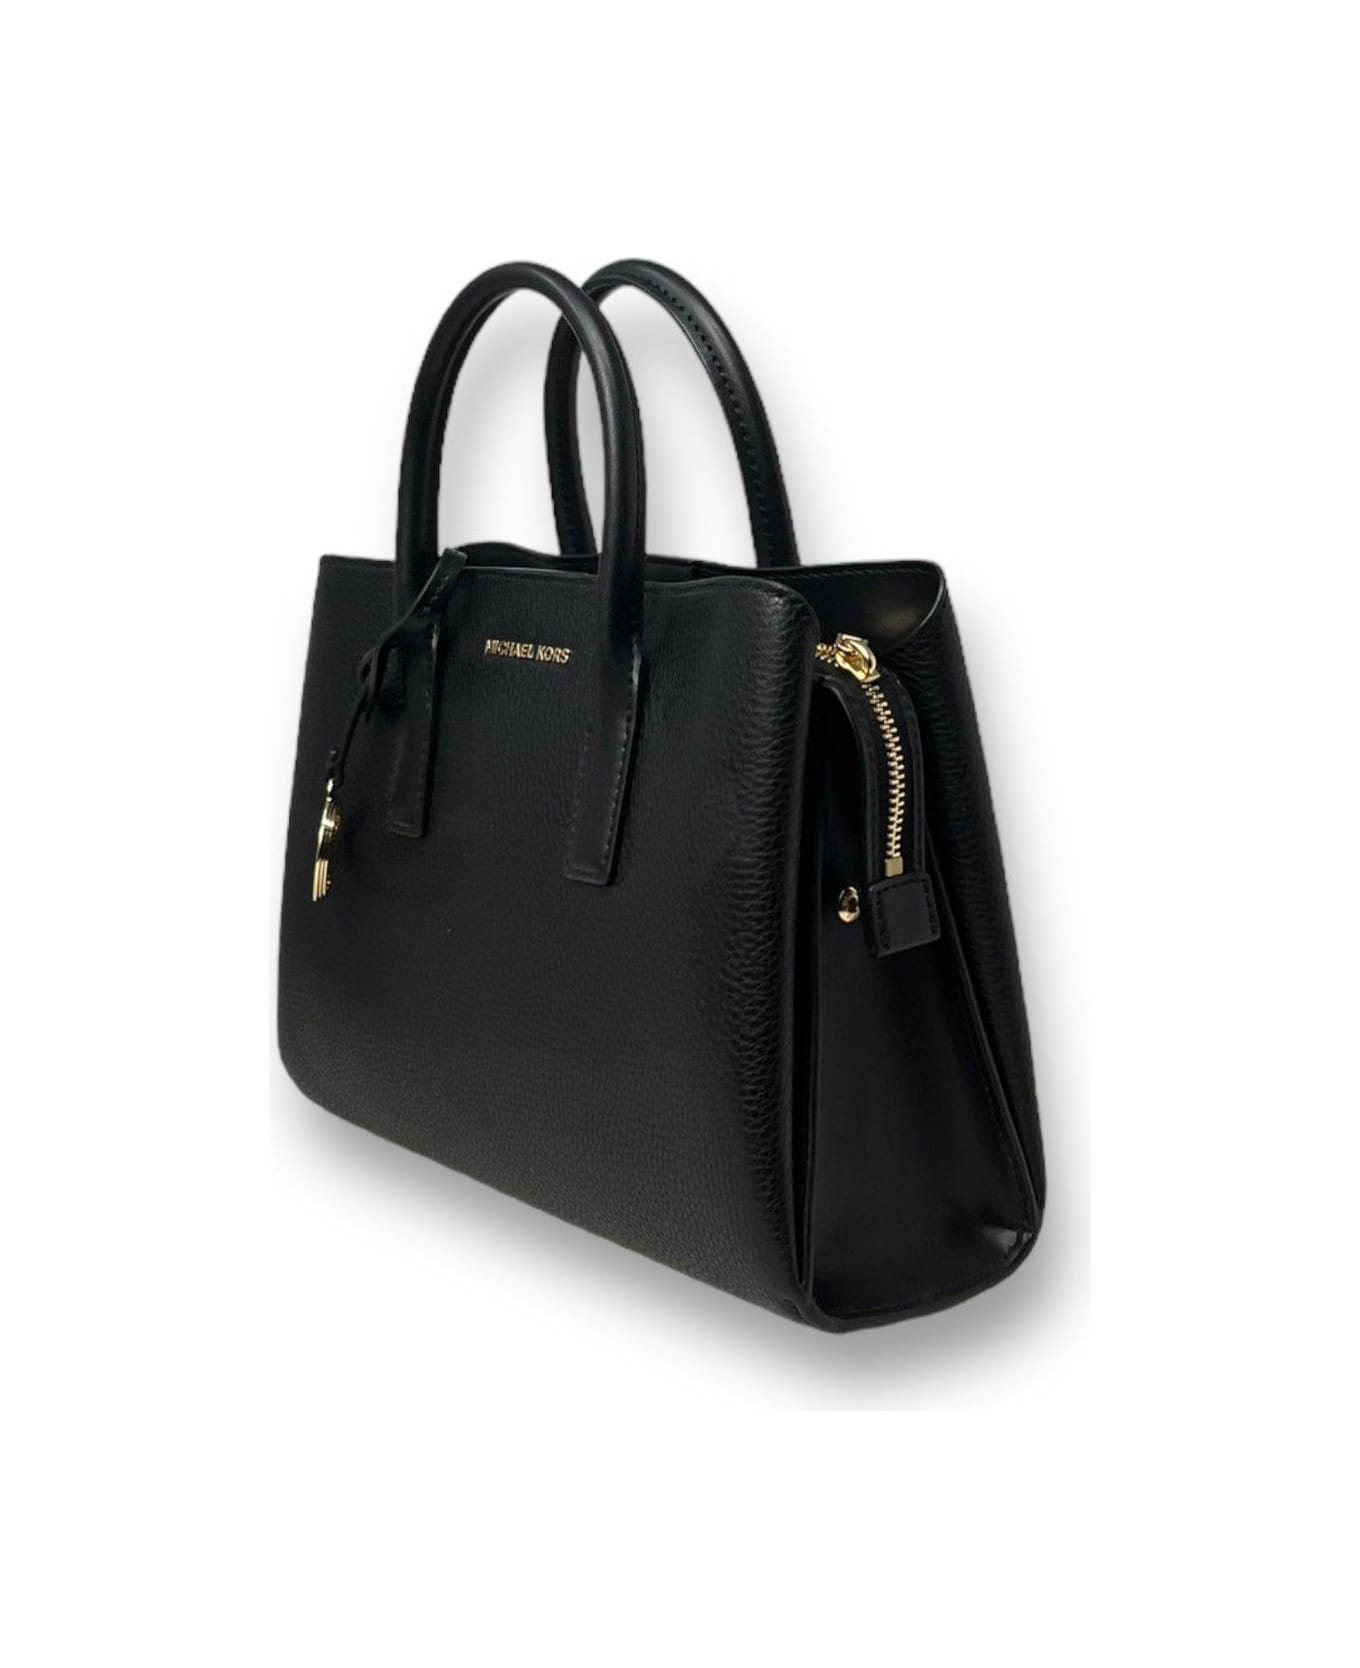 Michael Kors Ruthie Medium Top Handle Bag - Black